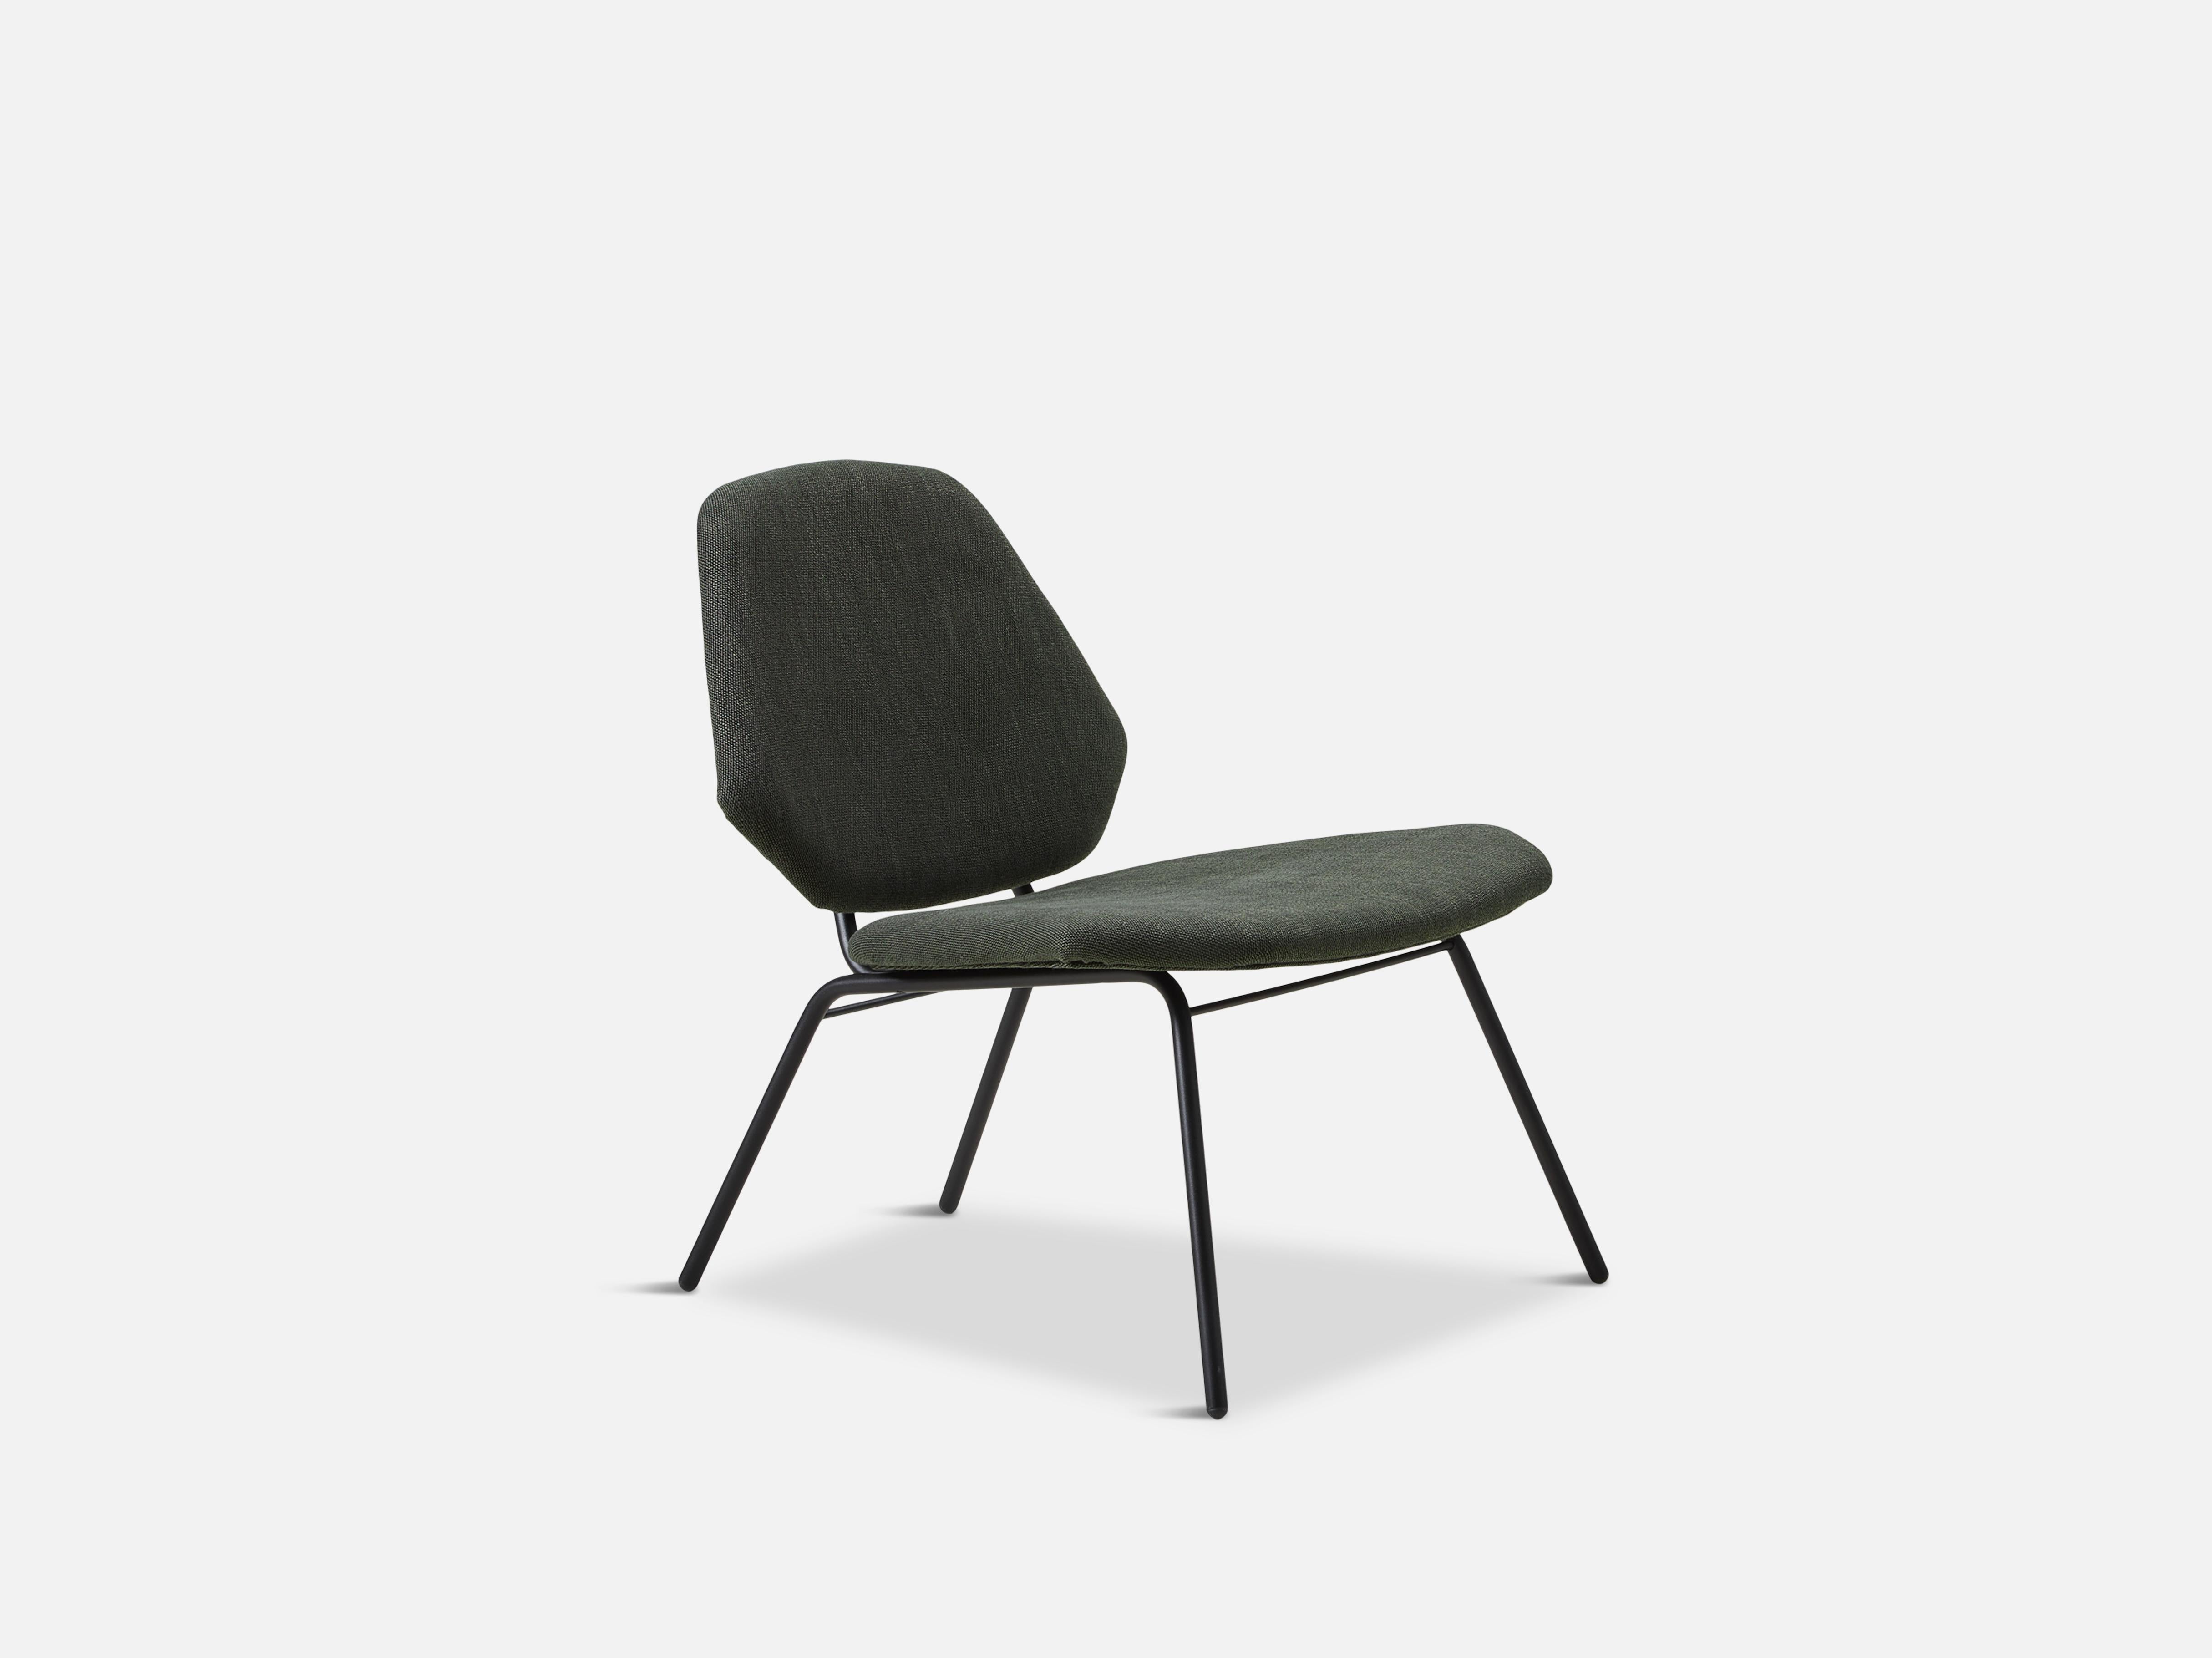 Lean army green lounge chair par Nur Design
Matériaux : Contreplaqué, fibres et mousse
Dimensions : D 66 x L 64 x H 72 cm
Disponible également en différentes couleurs.

Les fondateurs, Mia et Torben Koed, ont décidé de mettre leurs 30 années